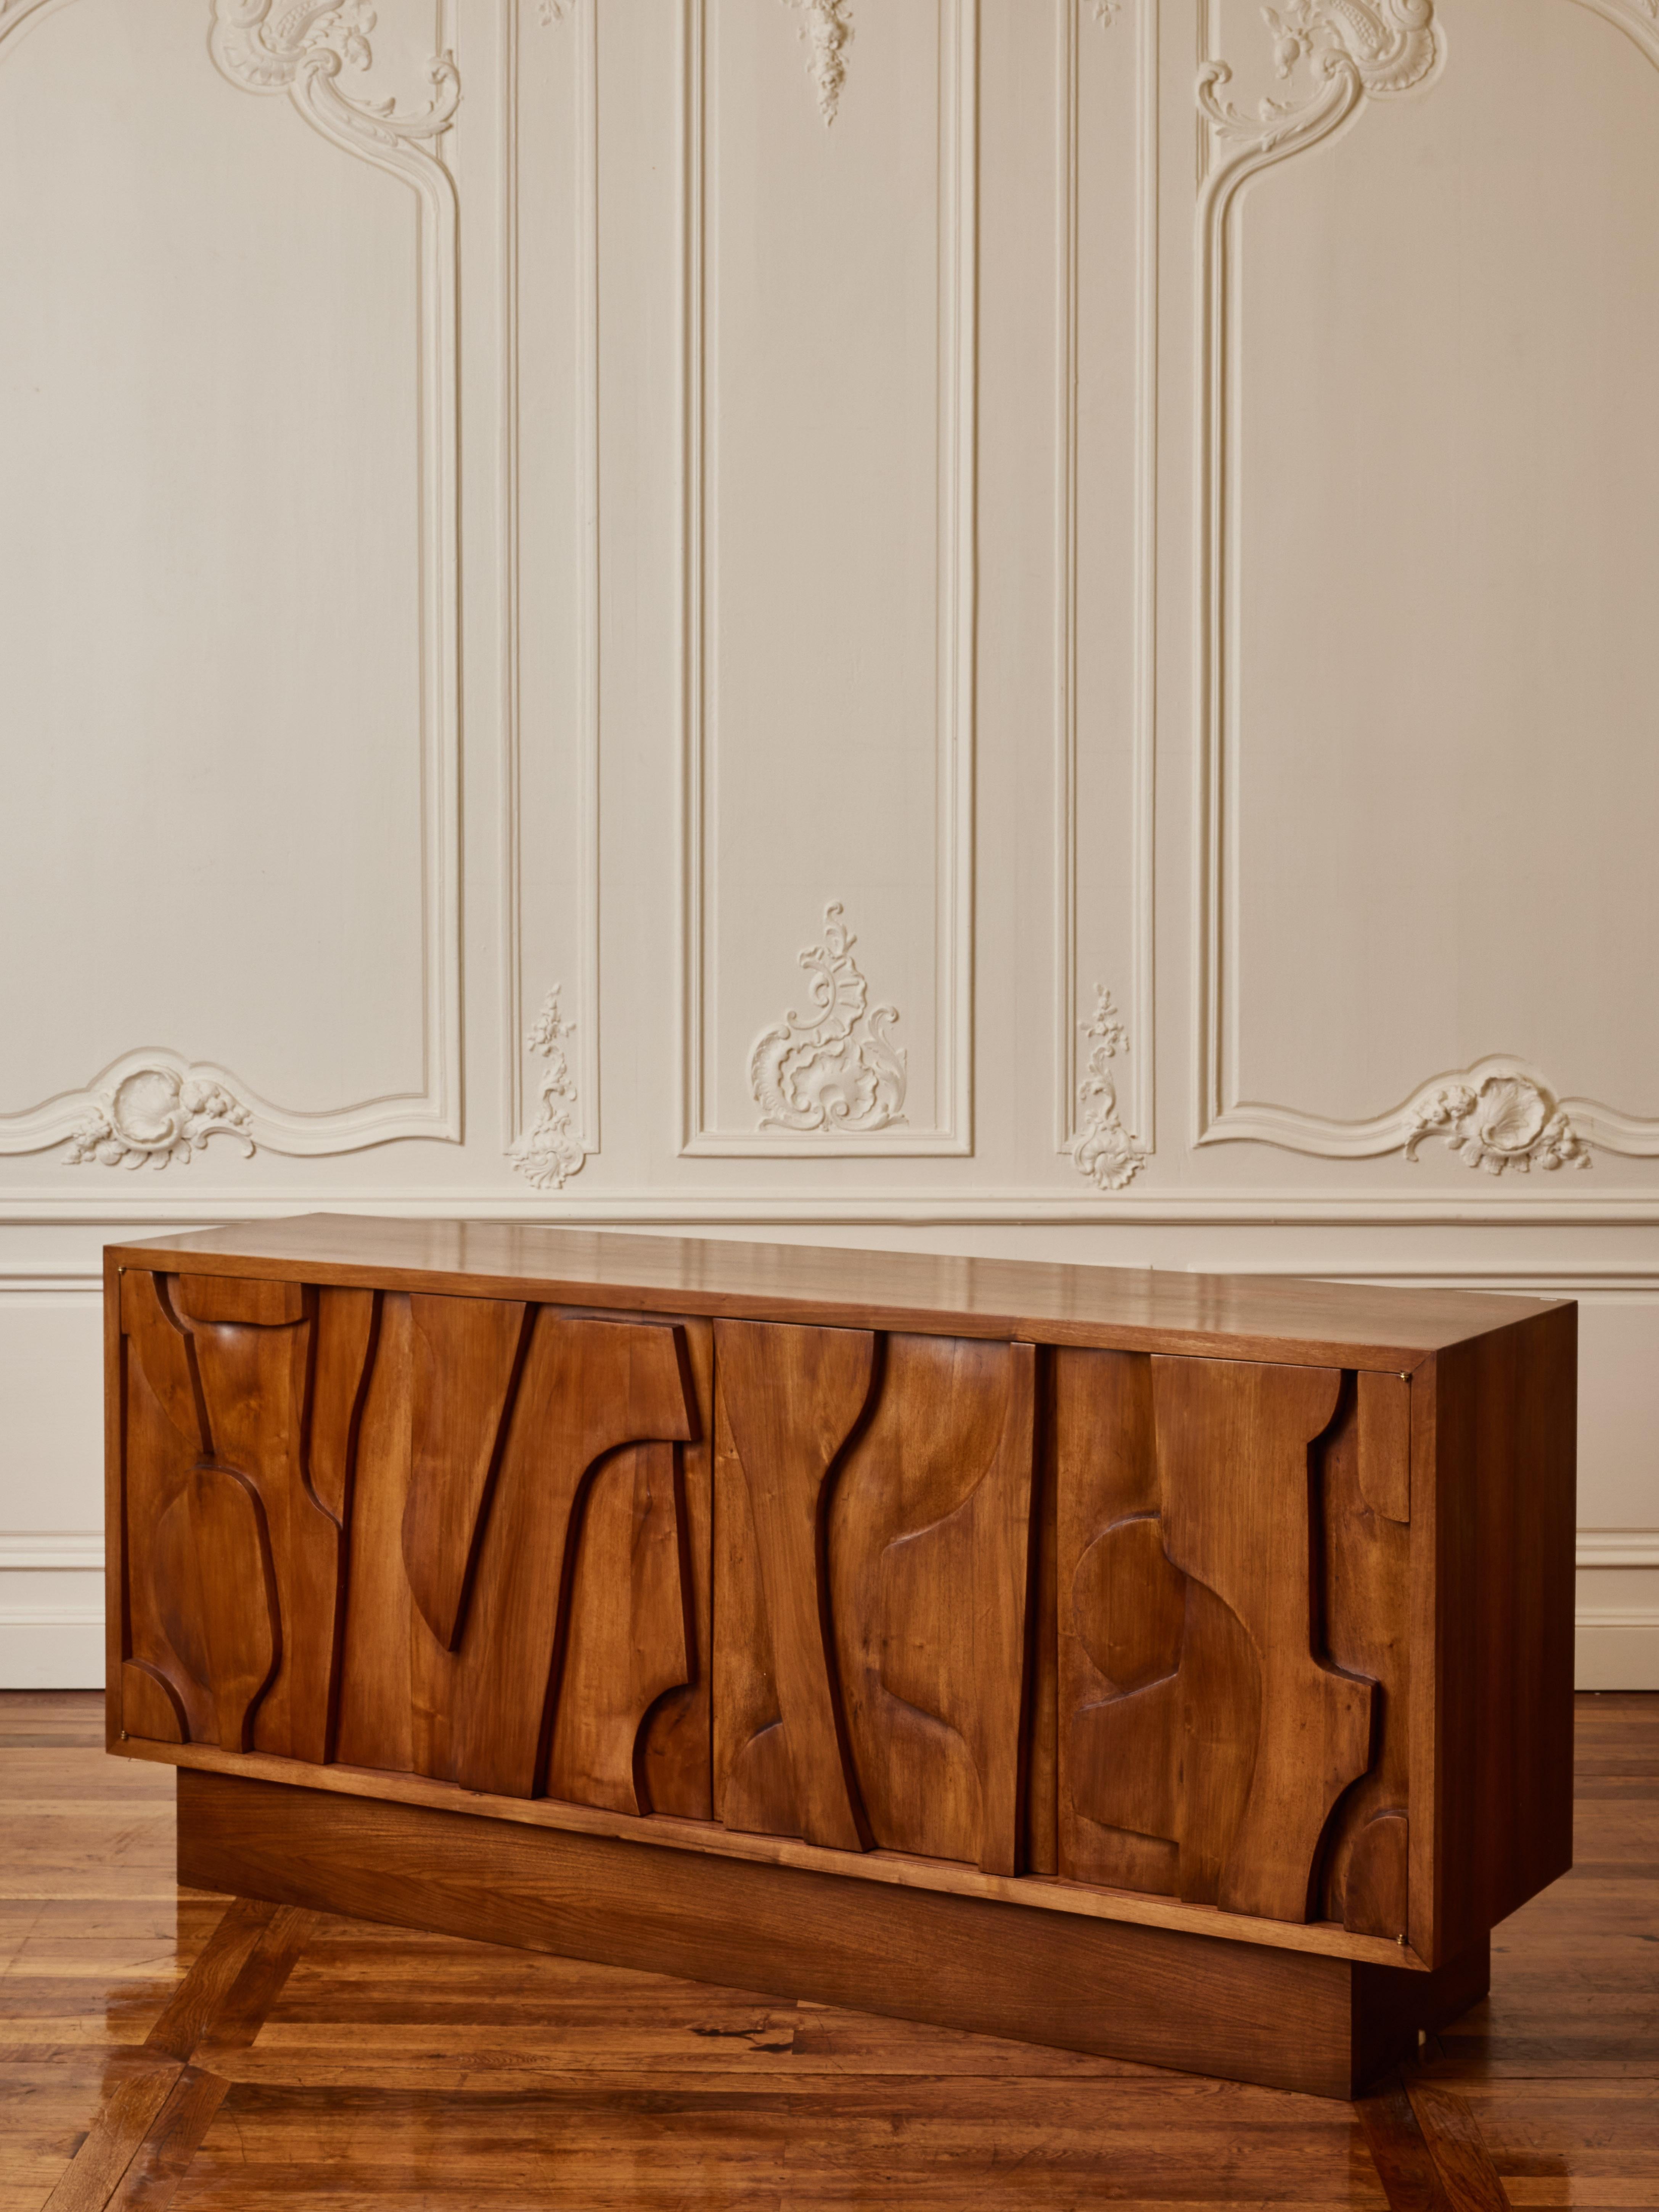 4-türiges Sideboard aus geschnitztem Holz.
Gestaltung durch das Studio Glustin.